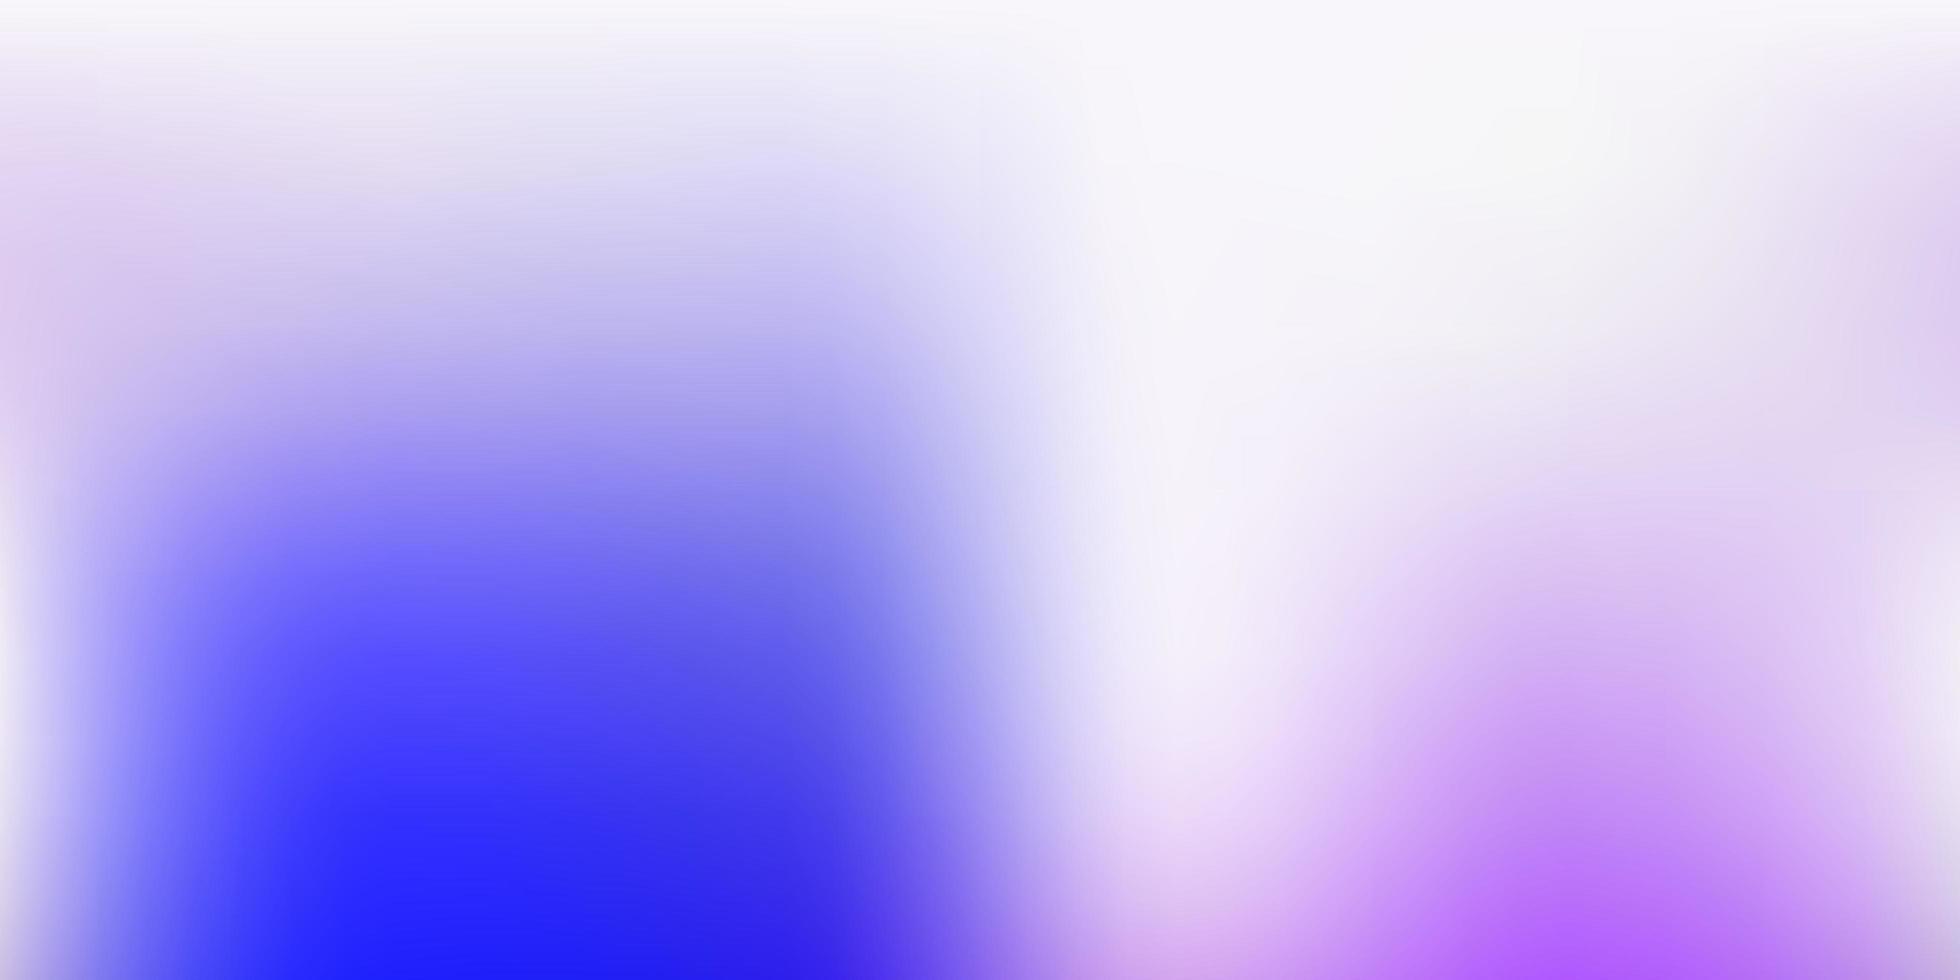 dessin de flou vectoriel rose clair, bleu.